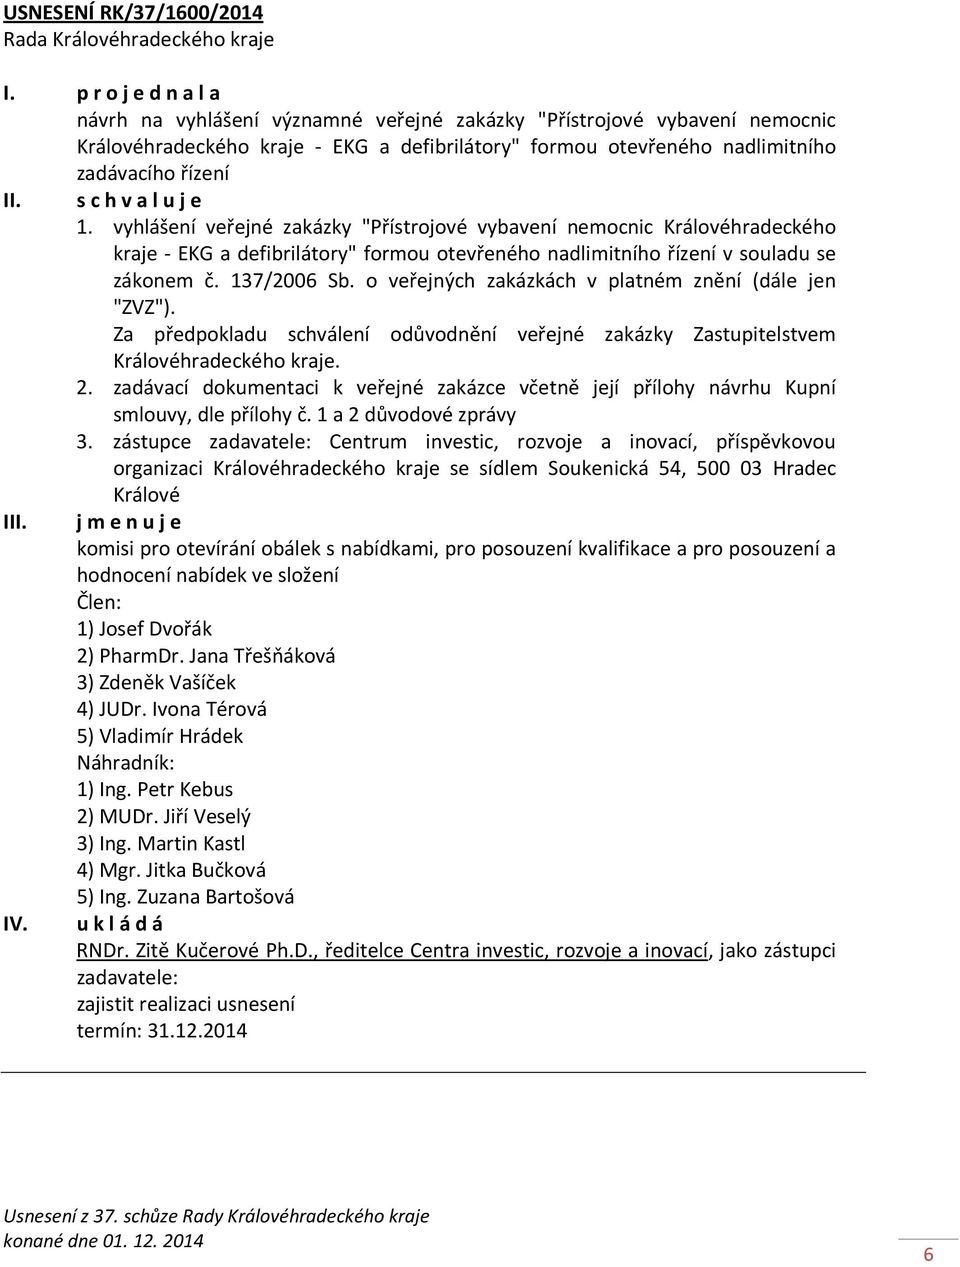 vyhlášení veřejné zakázky "Přístrojové vybavení nemocnic Královéhradeckého kraje - EKG a defibrilátory" formou otevřeného nadlimitního řízení v souladu se zákonem č. 137/2006 Sb.